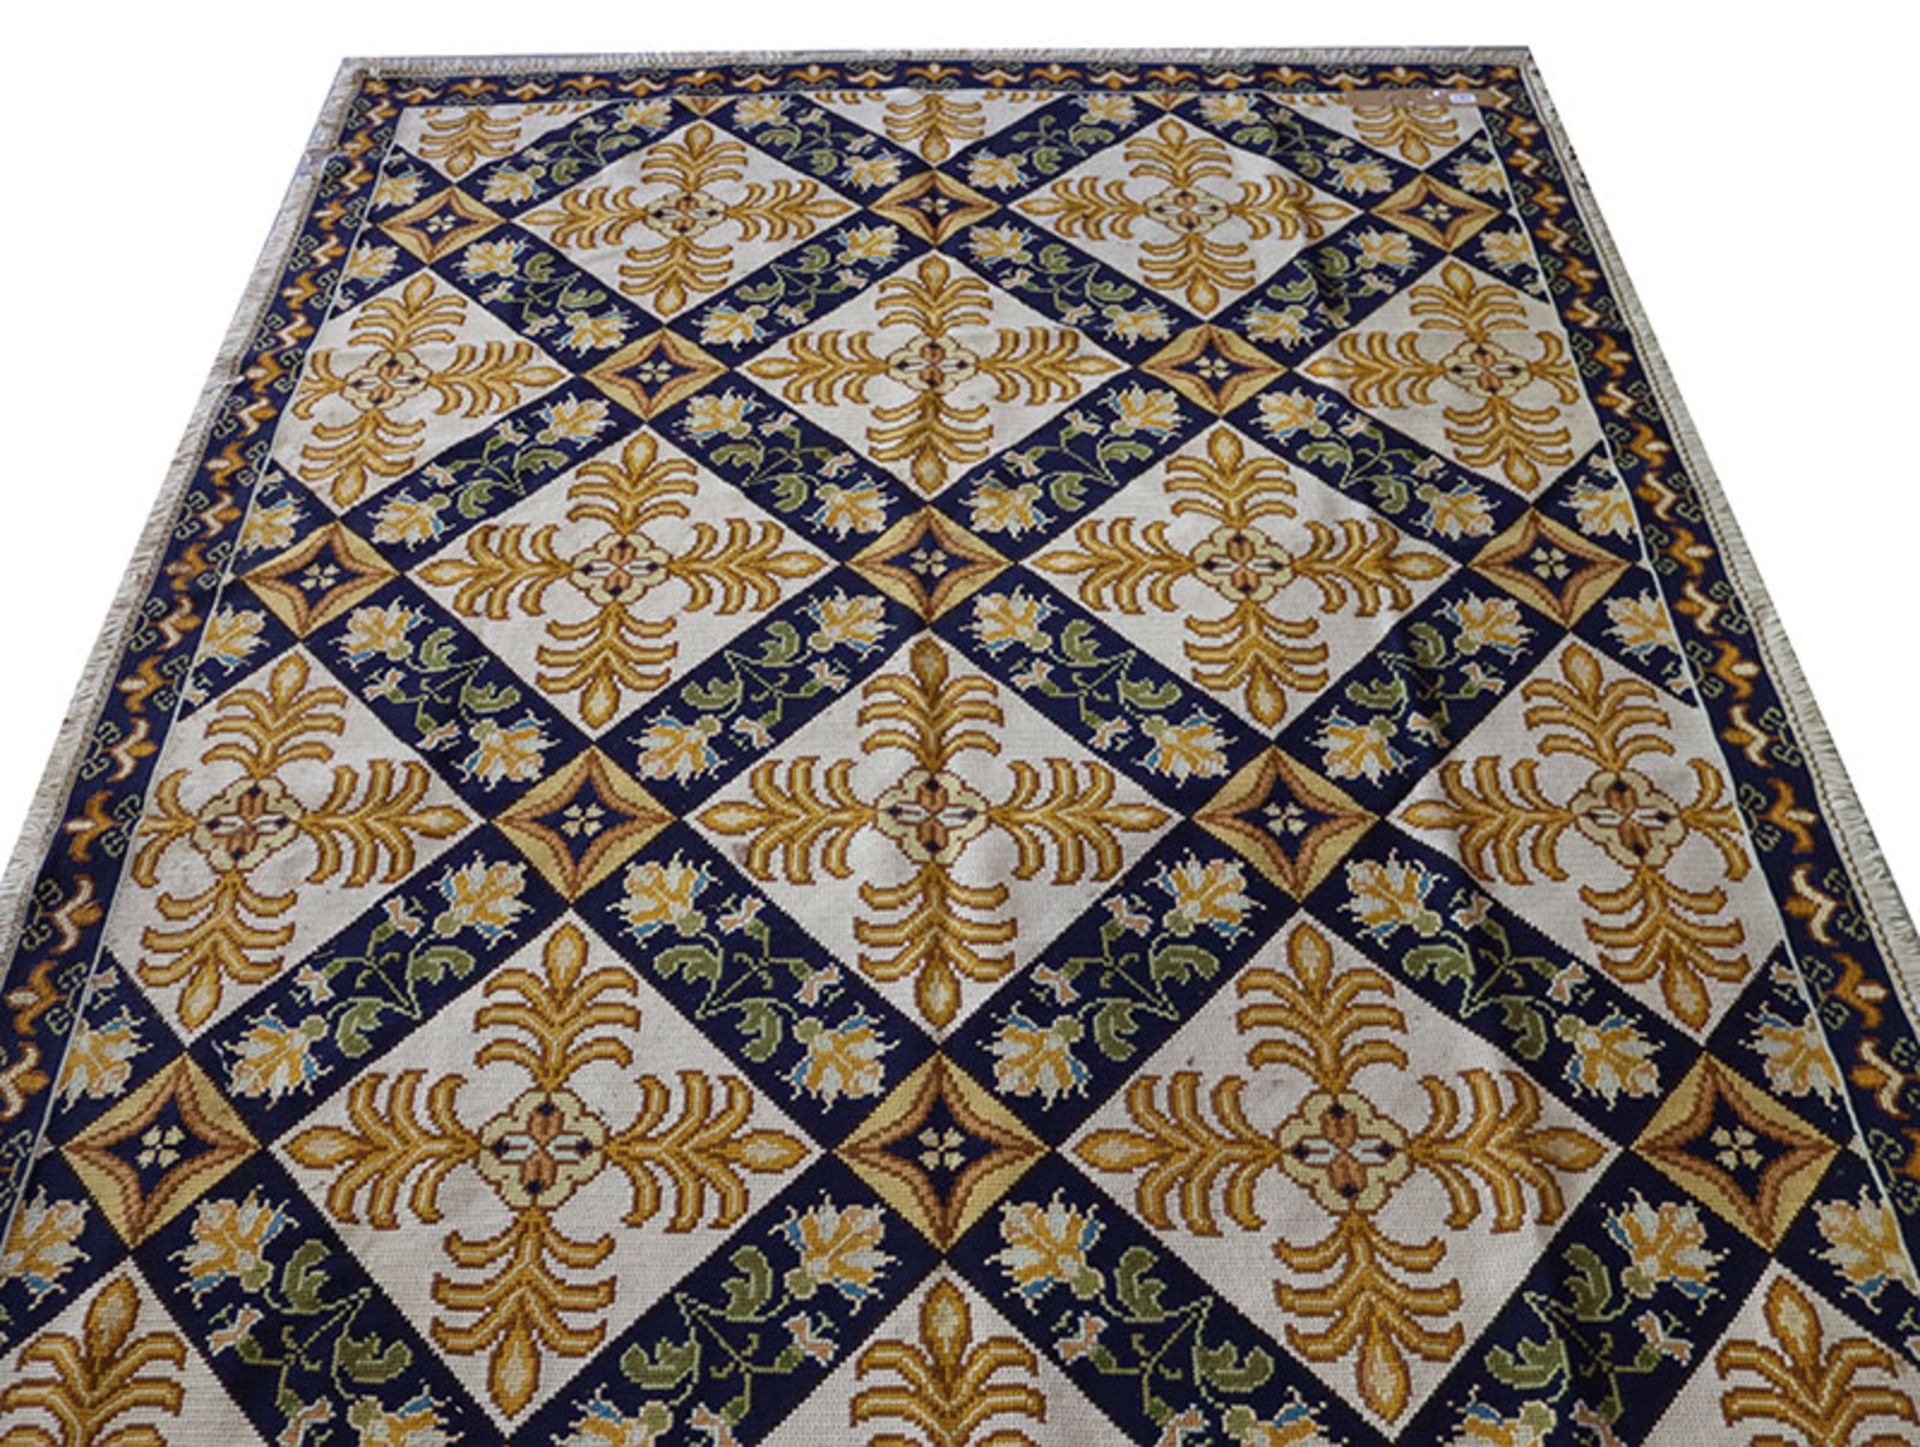 Portugiesischer Teppich, beige/gelb/blau, beschädigt, Gebrauchsspuren, 308 cm x 192 cm